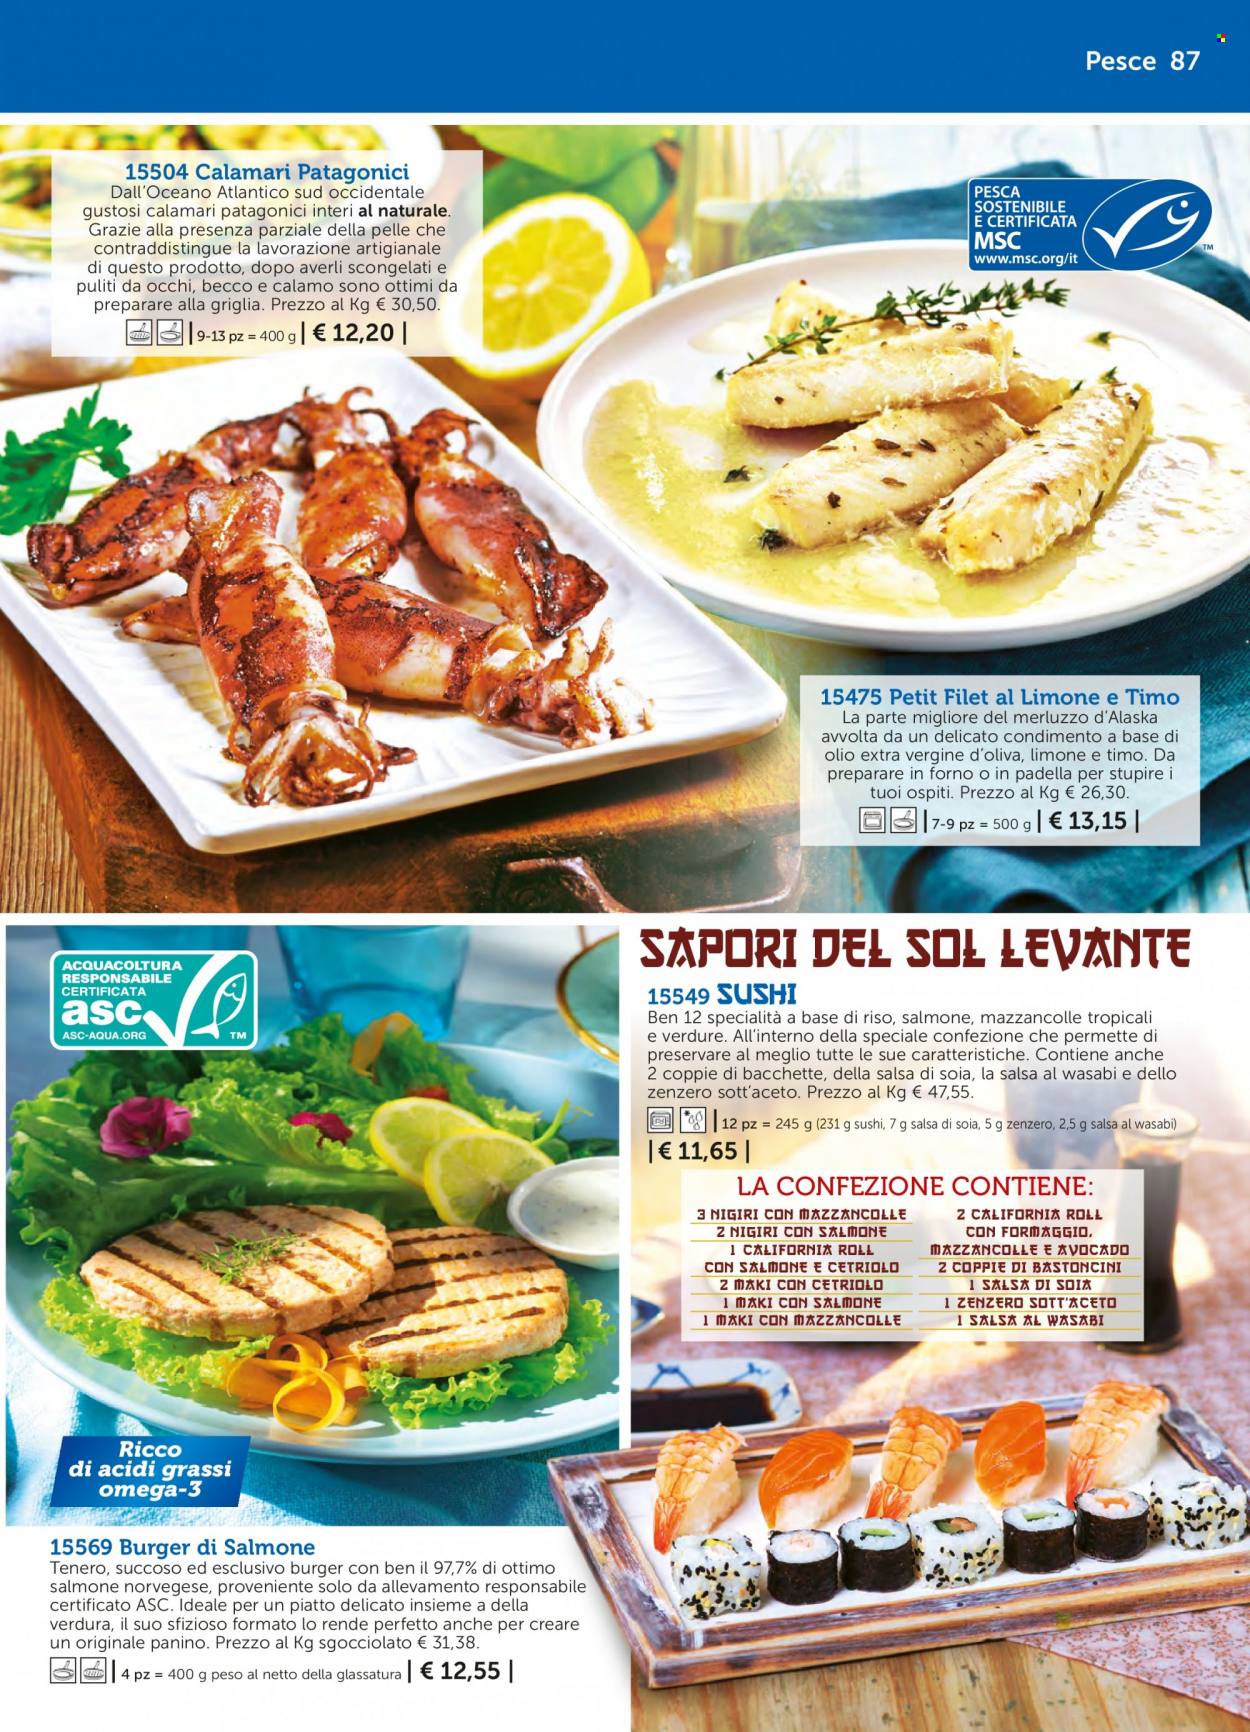 thumbnail - Volantino Bofrost - Prodotti in offerta - hamburger, calamari, pesce, mazzancolle, merluzzo, burger di pesce, bastoncini, sushi, burger di salmone, aceto. Pagina 87.